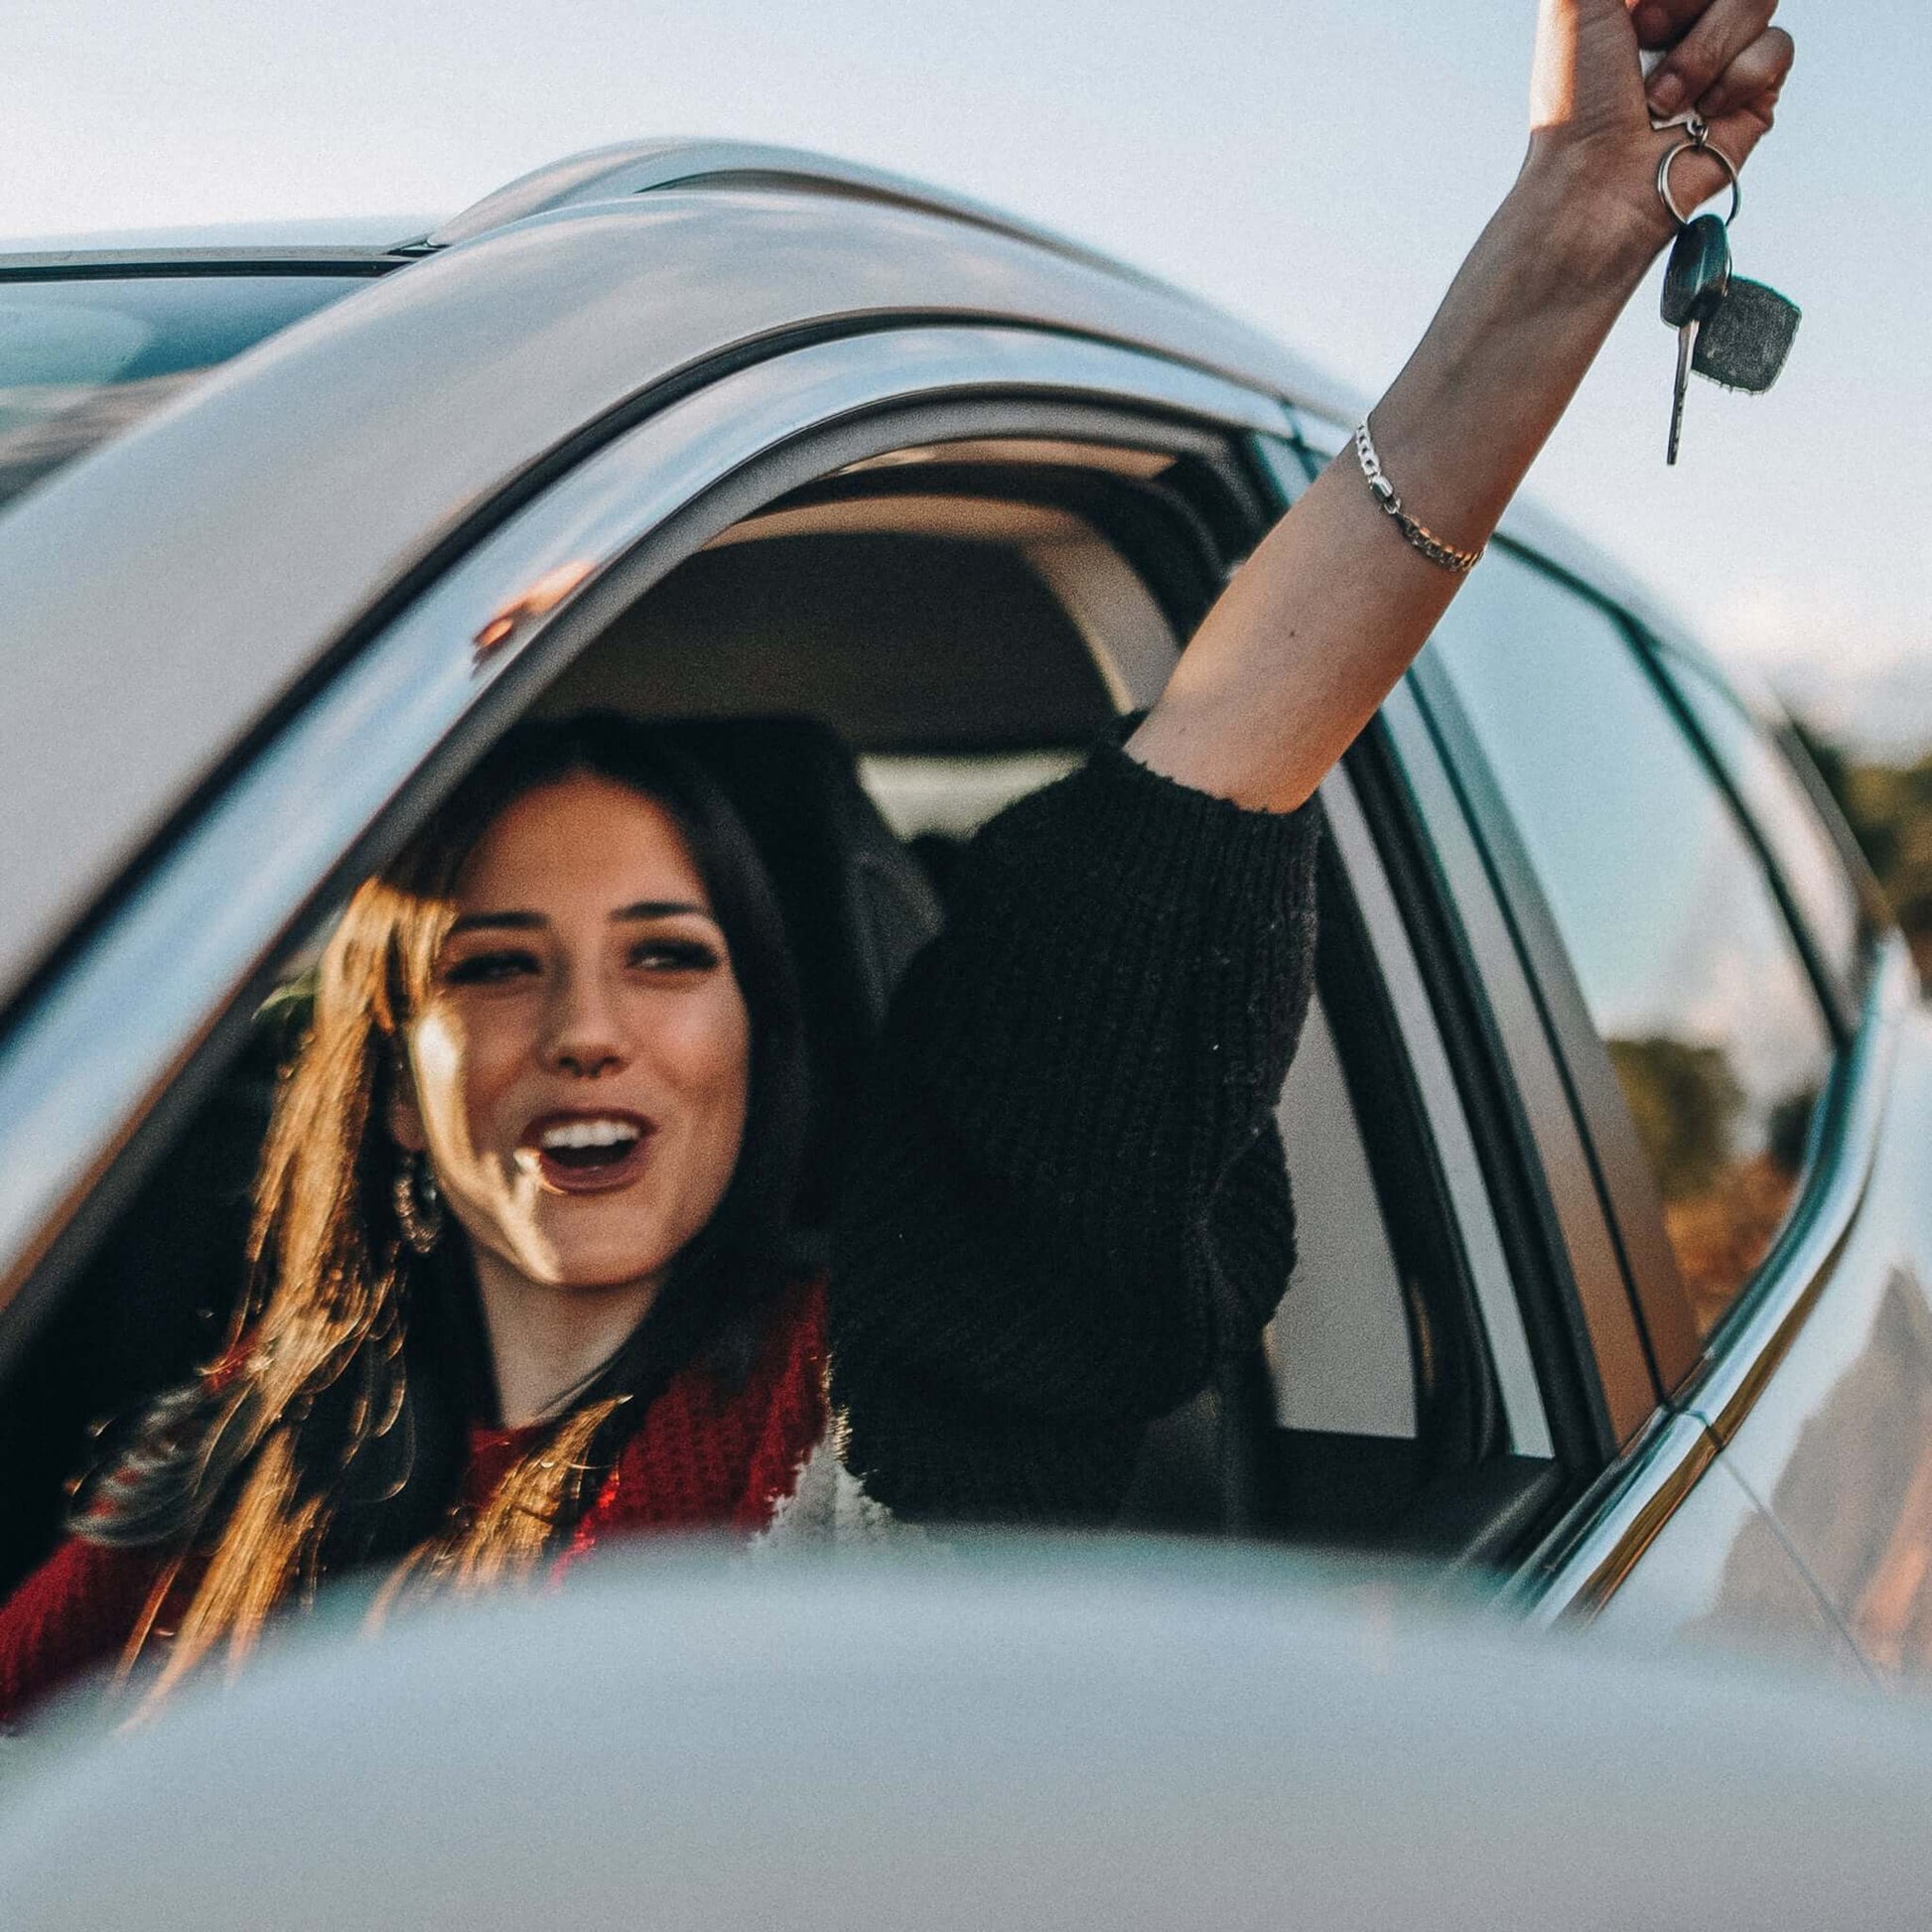 Перевод водительского удостоверения: Молодая женщина сидит за рулем и радуется тому, что у нее есть водительские права